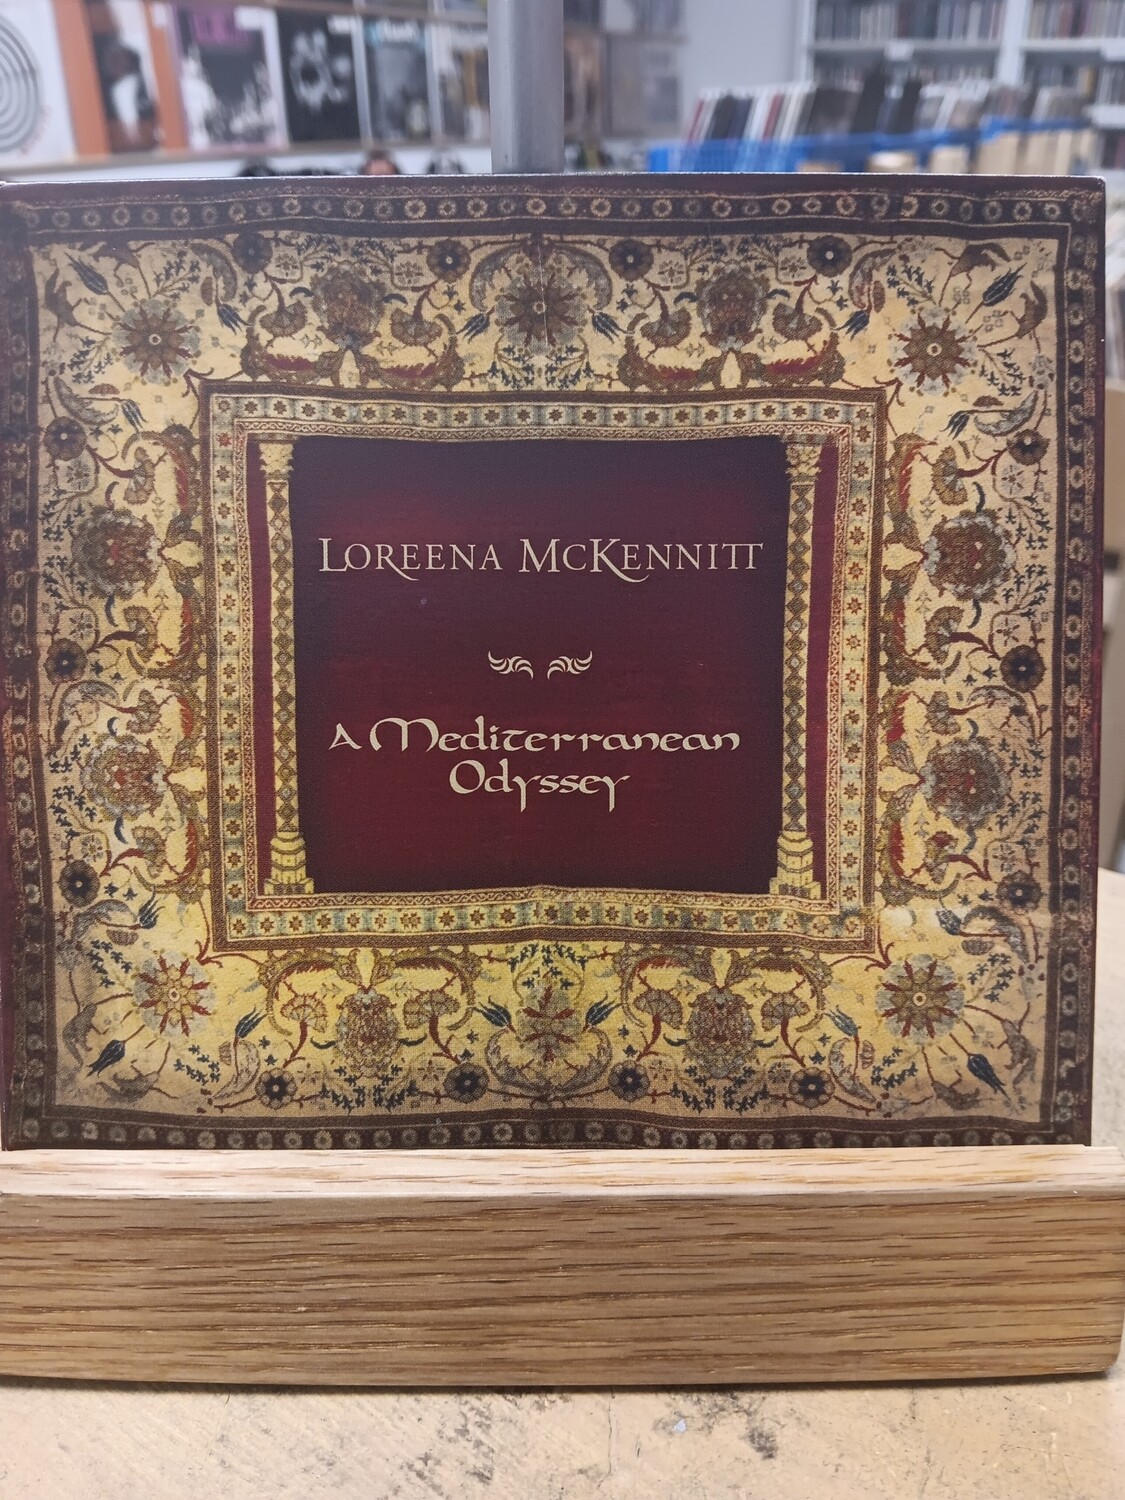 LOREENA McKENNITT - A mediteranean odyssey (CD)